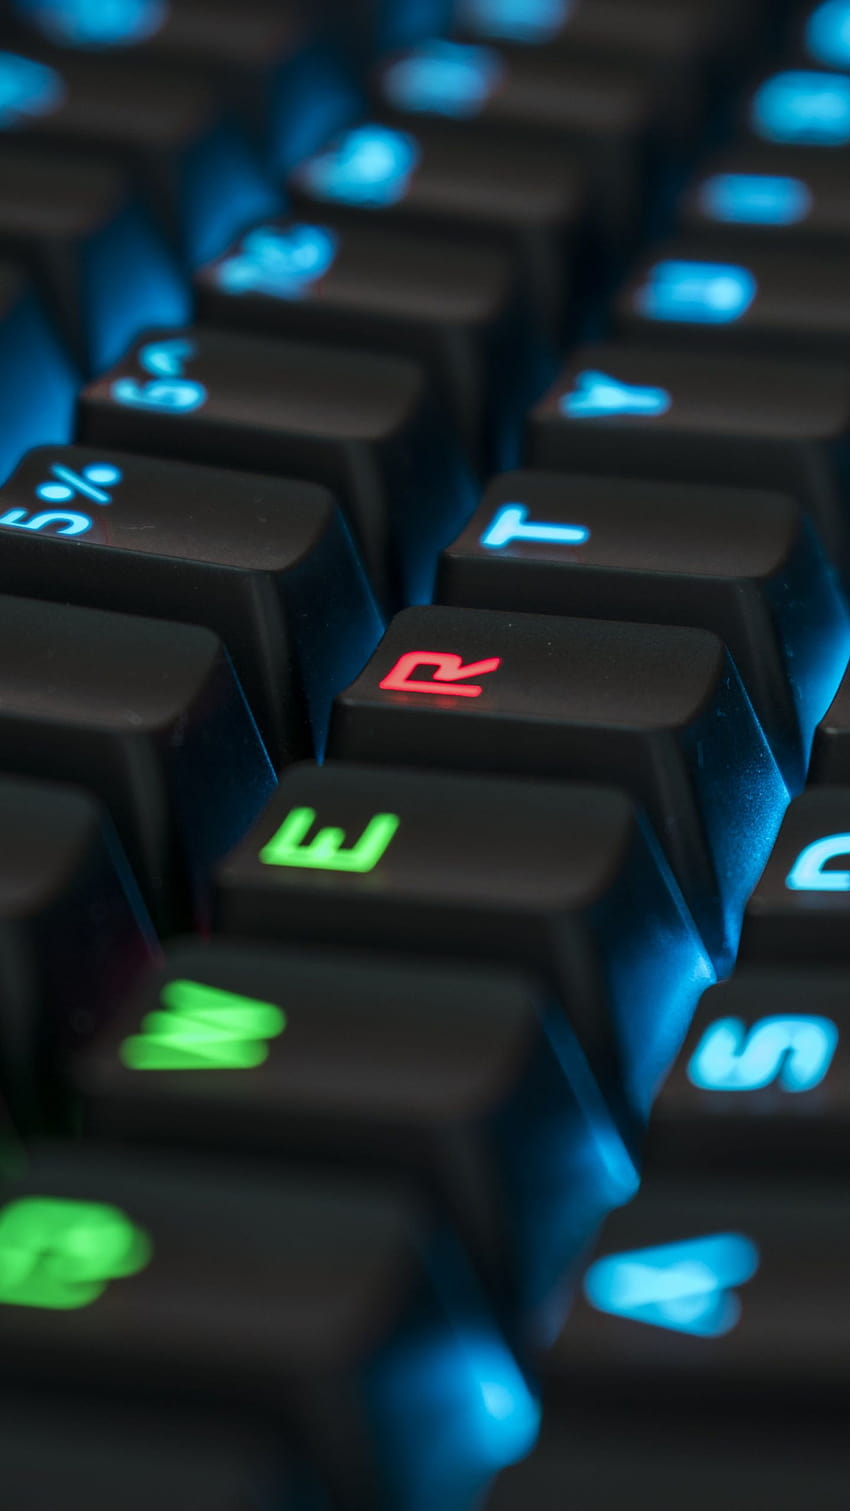 Siyah bilgisayar klavyesi RGB mekanik klavye klavyeler PC [6000x3375], Mobil ve Tablet, rgb klavyeniz için HD telefon duvar kağıdı